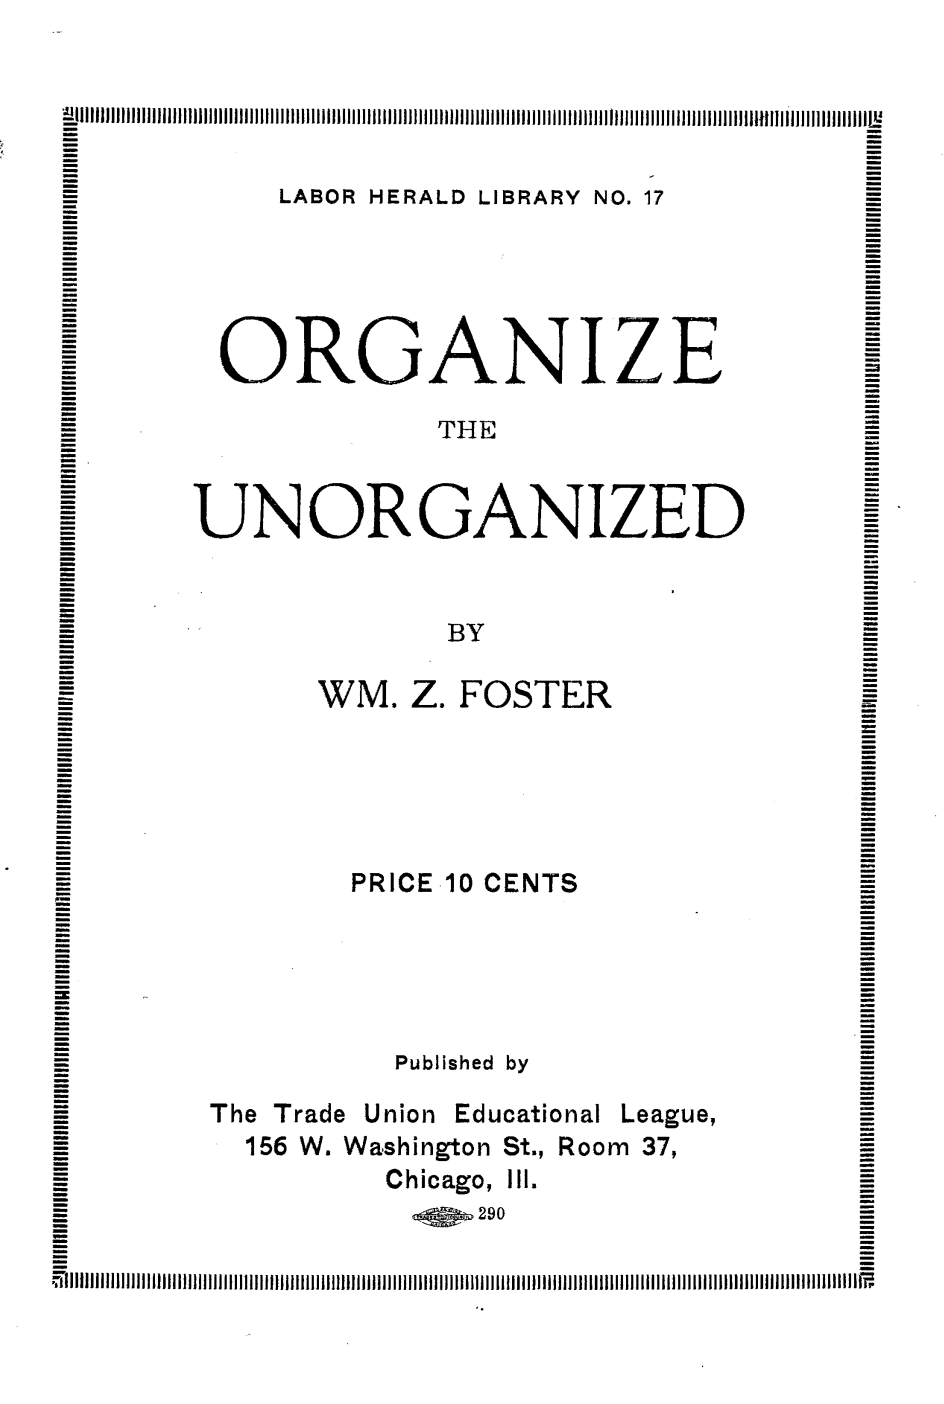 Labor Heralf Library No. 17: Organize the Unorganized